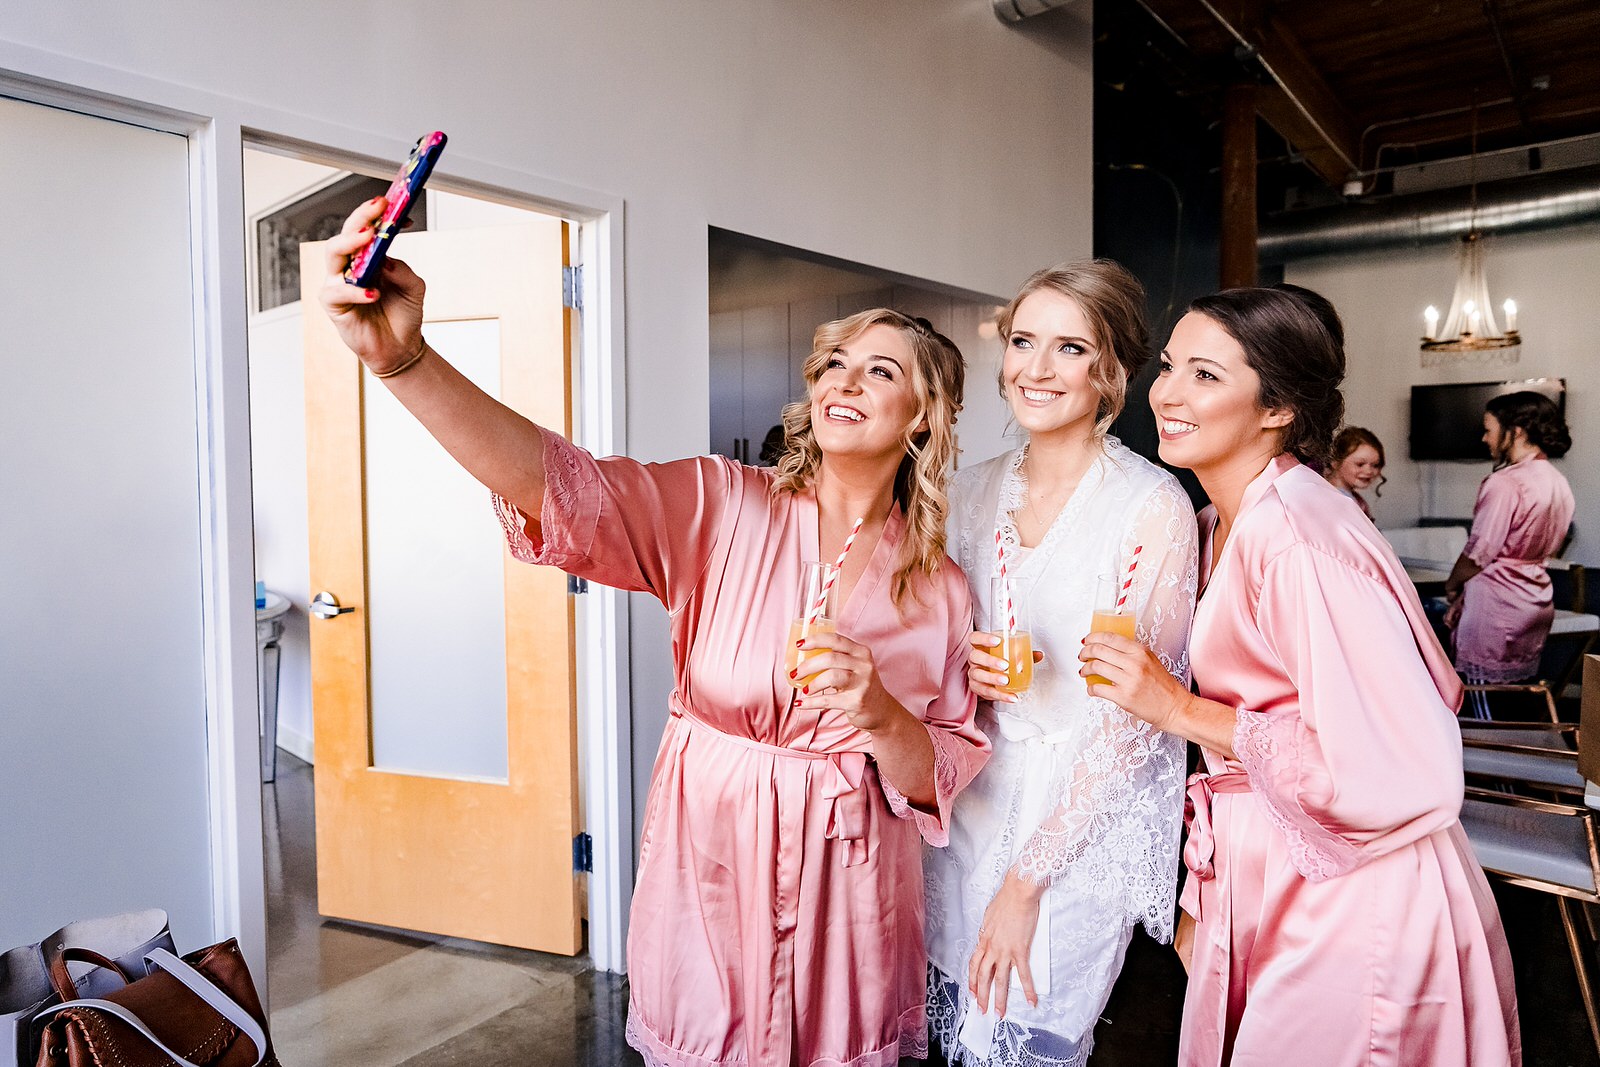 Bridesmaids robe selfies ftw!